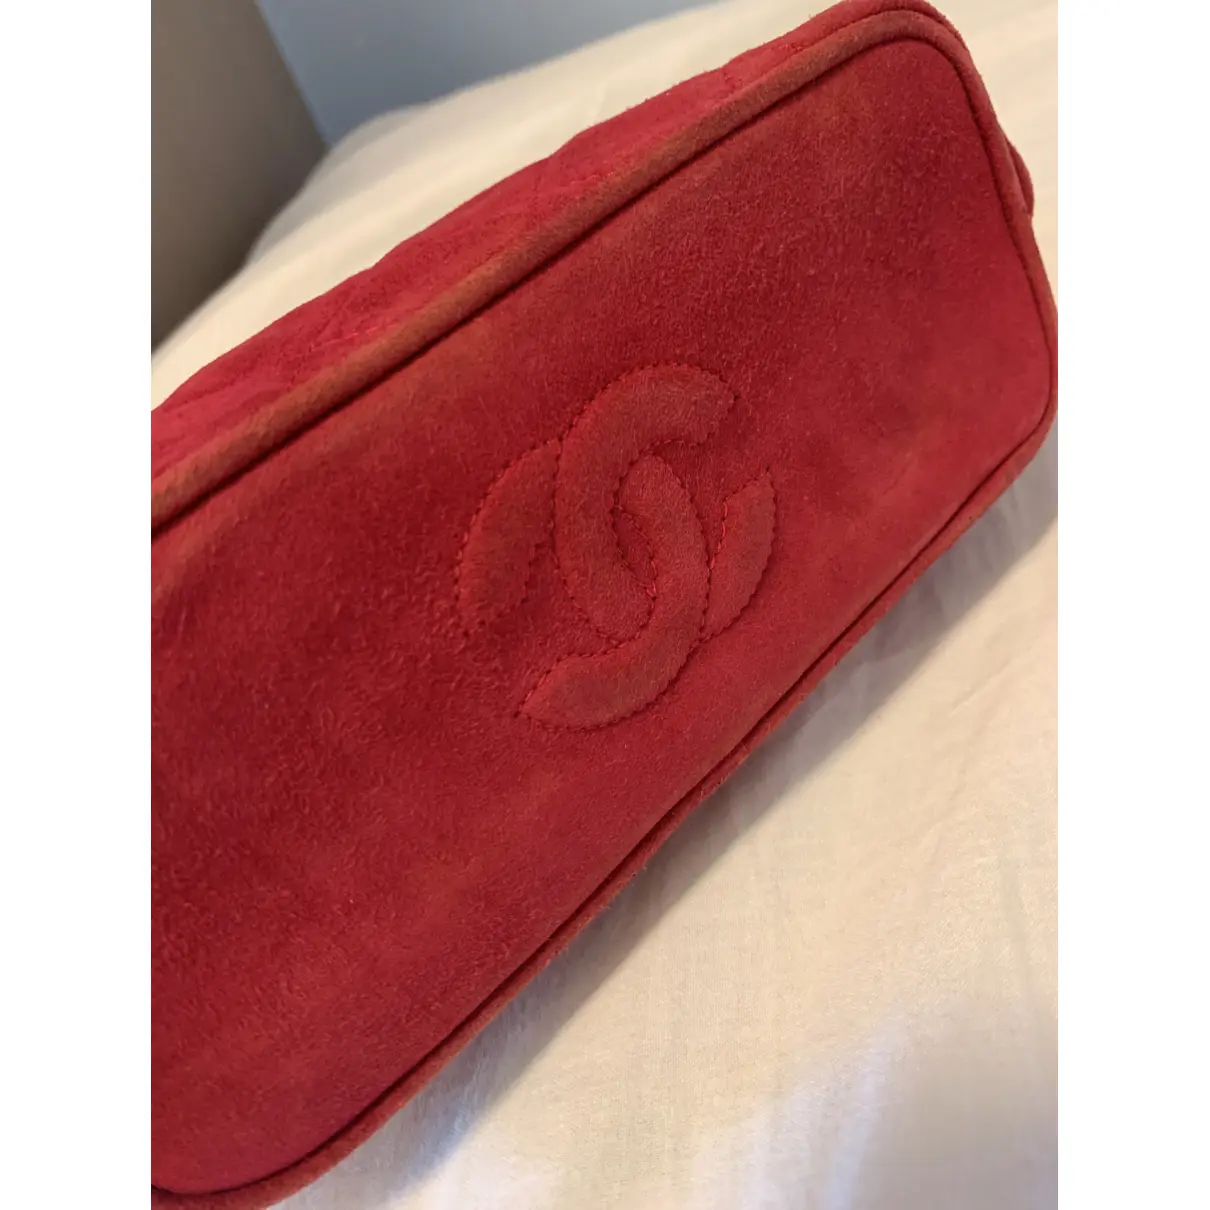 Buy Chanel Handbag online - Vintage